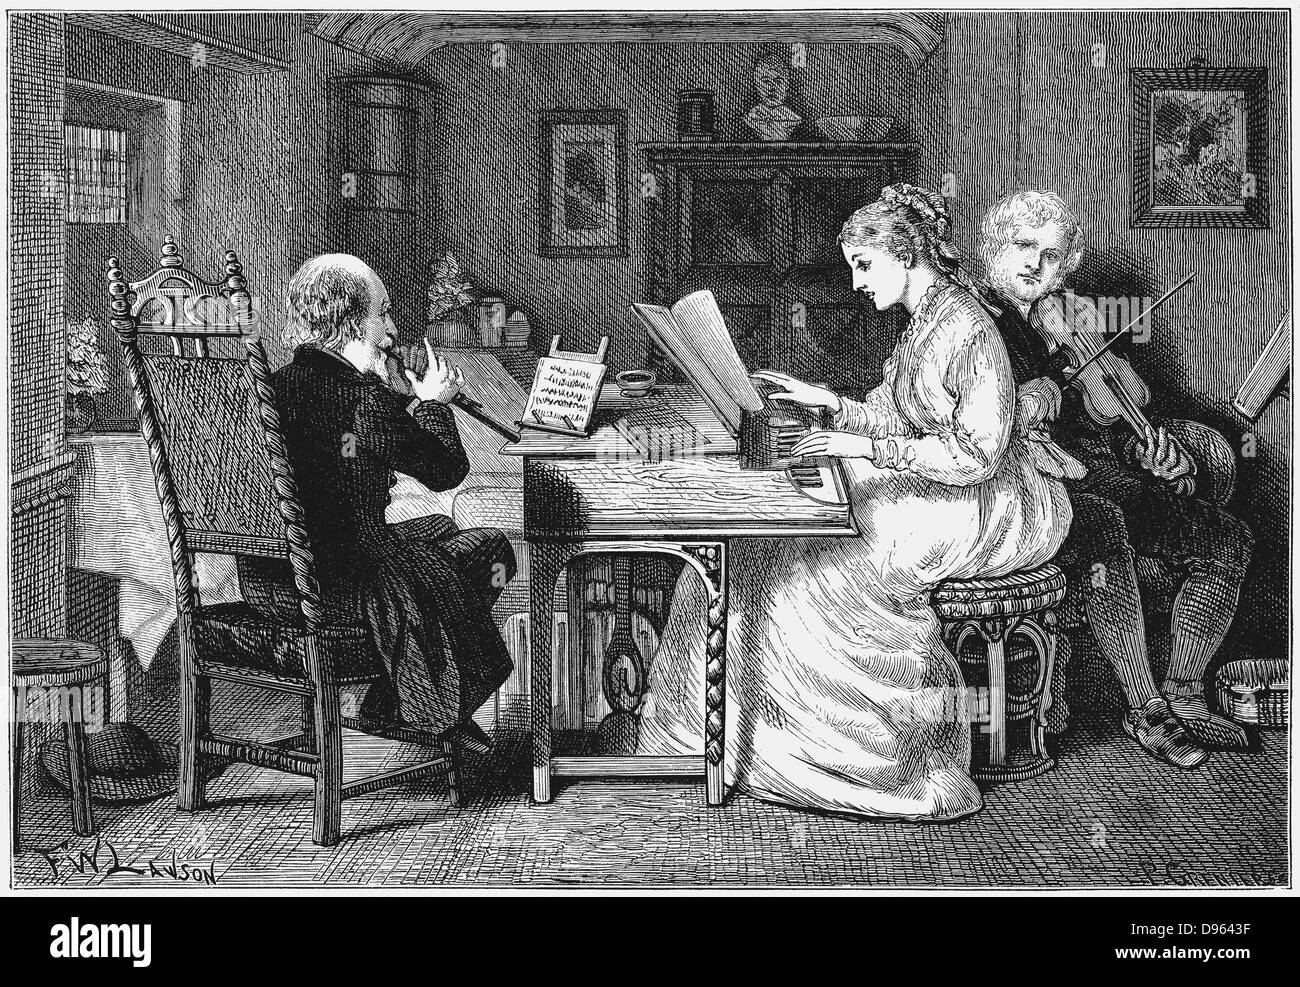 Making music.Woman at keyboard men playing violin and clarinet(?). Illustration by Francis Wilfrid Lawson. Wood engraving, London, 1874. Stock Photo